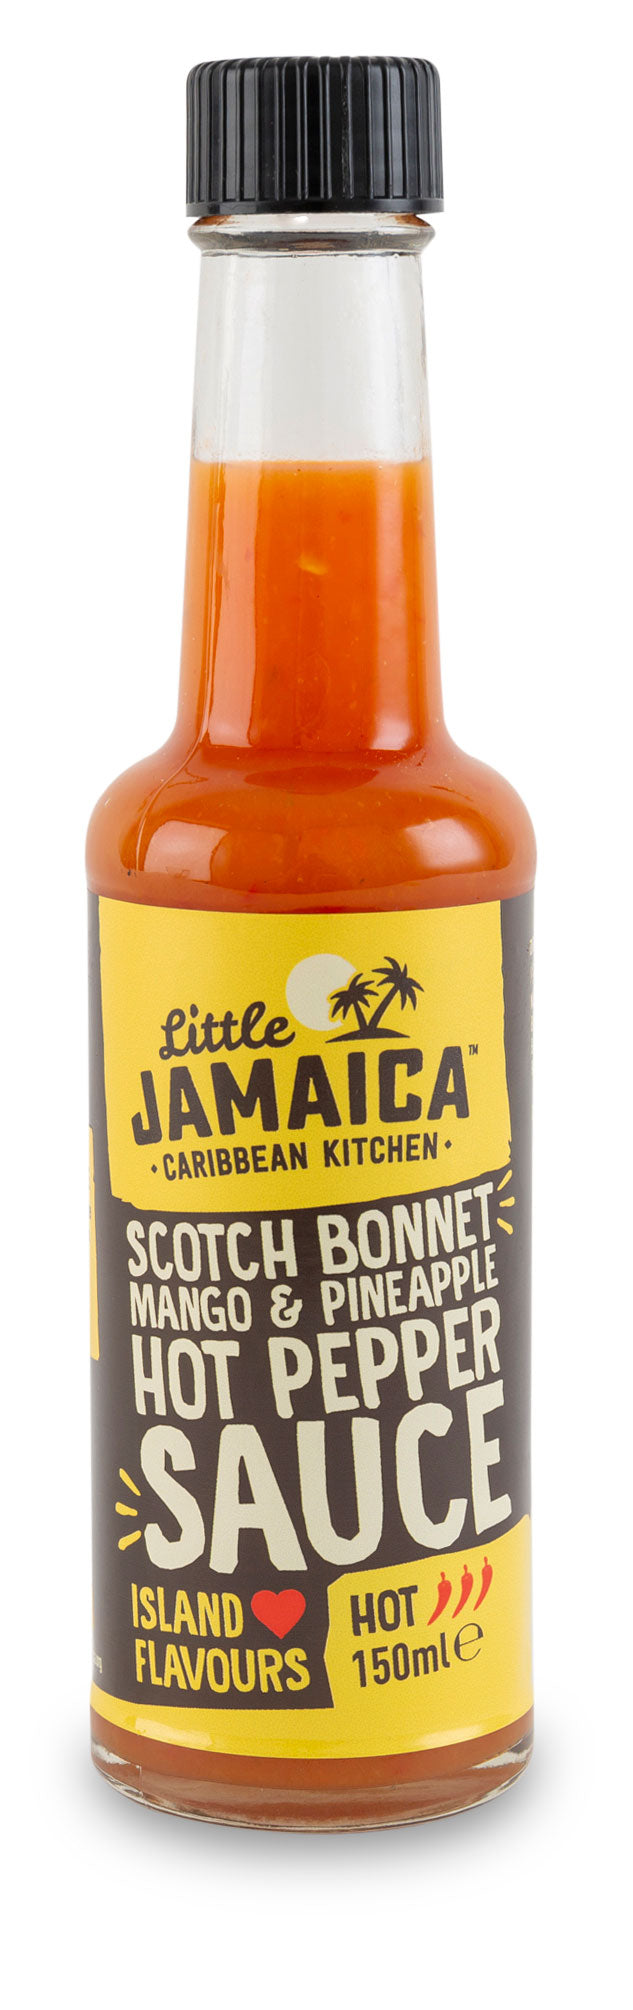 Scotch Bonnet, Mango & Pineapple Hot Pepper Sauce